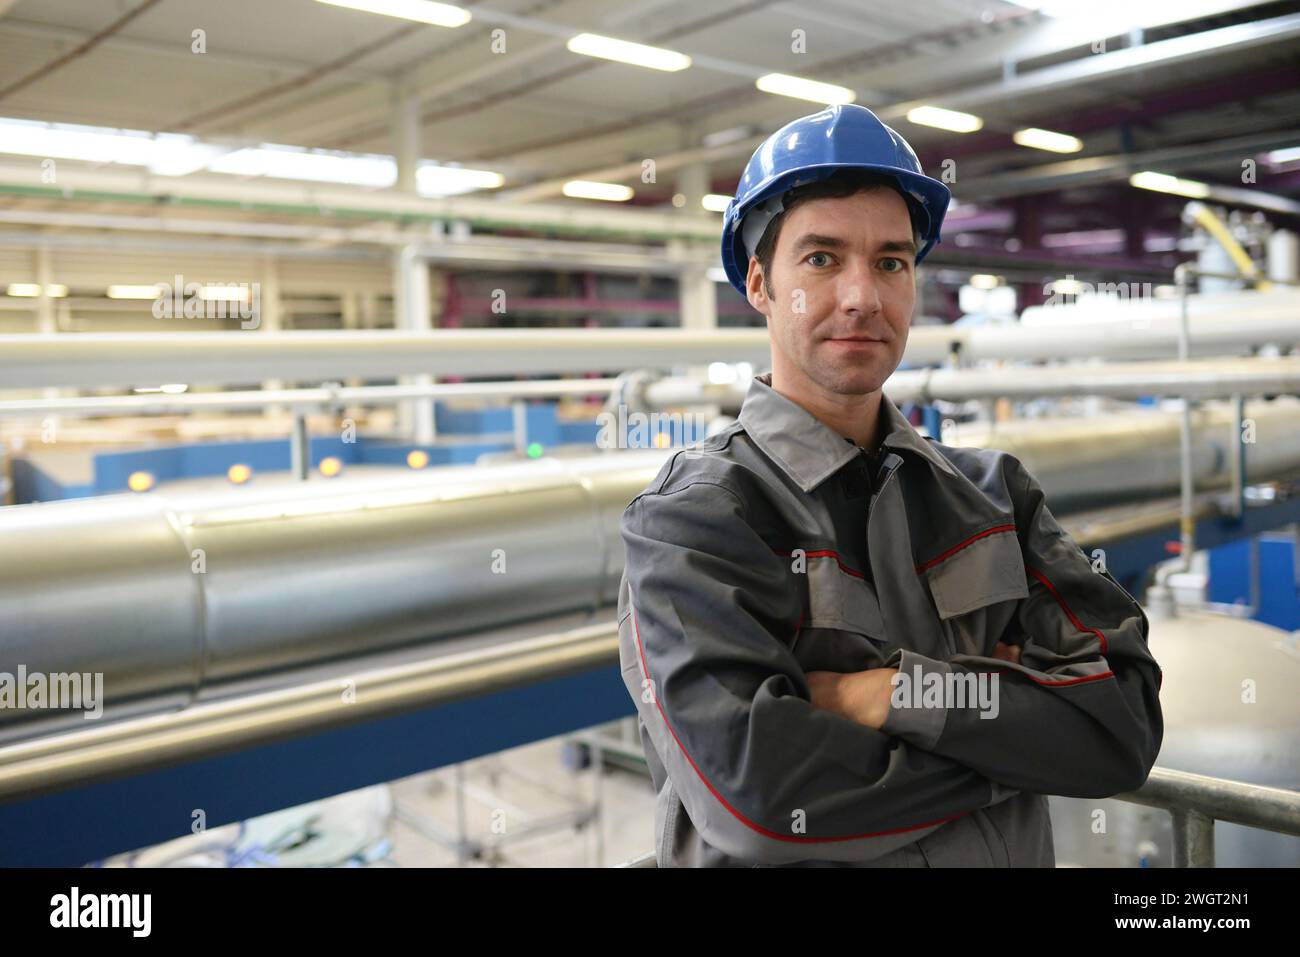 Portrait von erfolgreichen Arbeiter in einem Industrieunternehmen, in Arbeitskleidung am Arbeitsplatz - Nahaufnahme Stockfoto